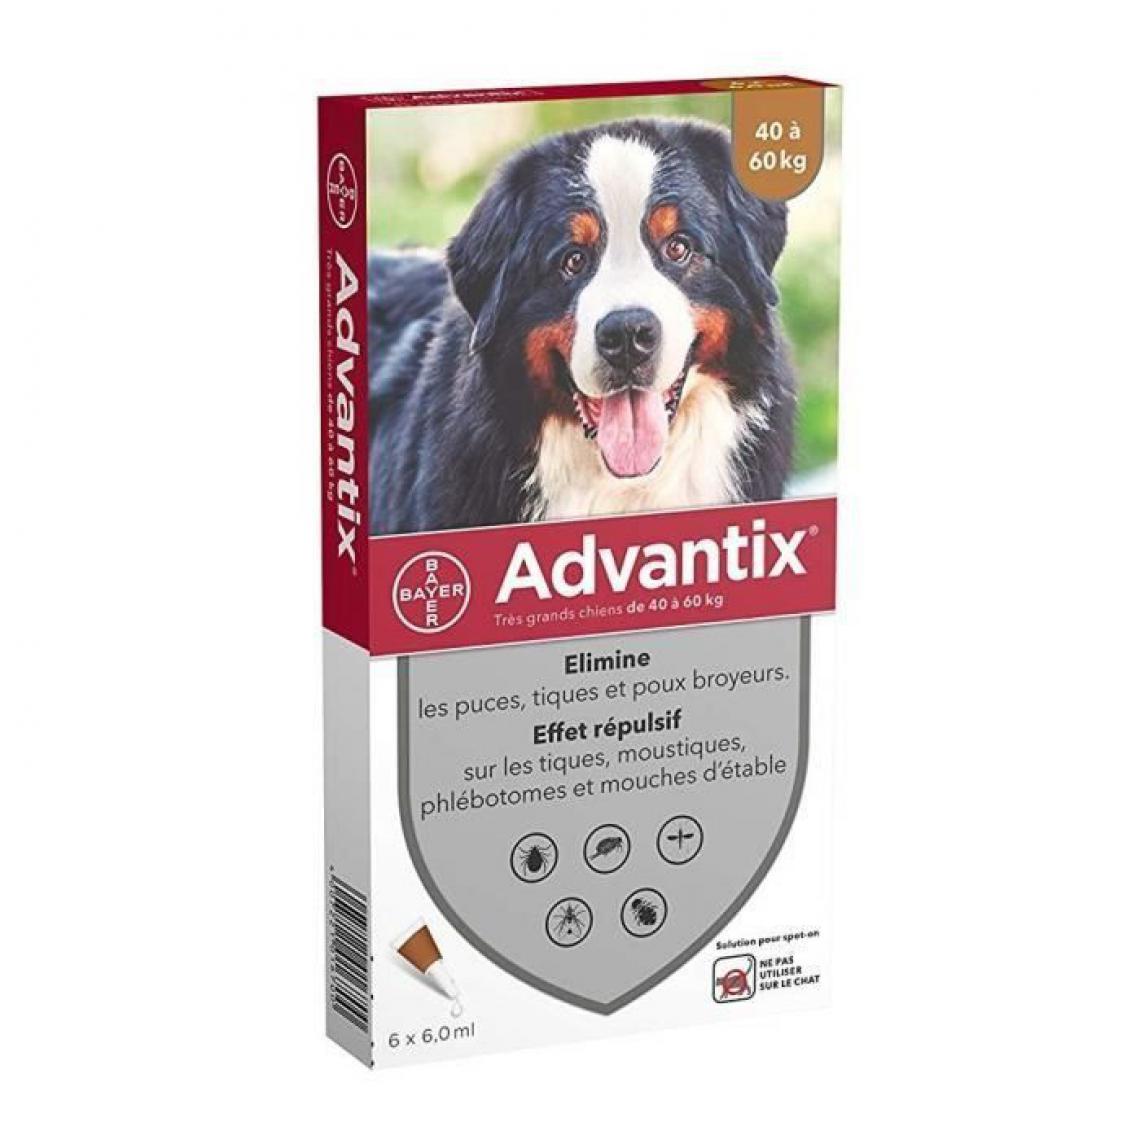 Advantix - ADVANTIX 6 pipettes antiparasitaires - Pour tres grand chien de 40 a 60 kg - 6 x 6 ml - Anti-parasitaire pour chien